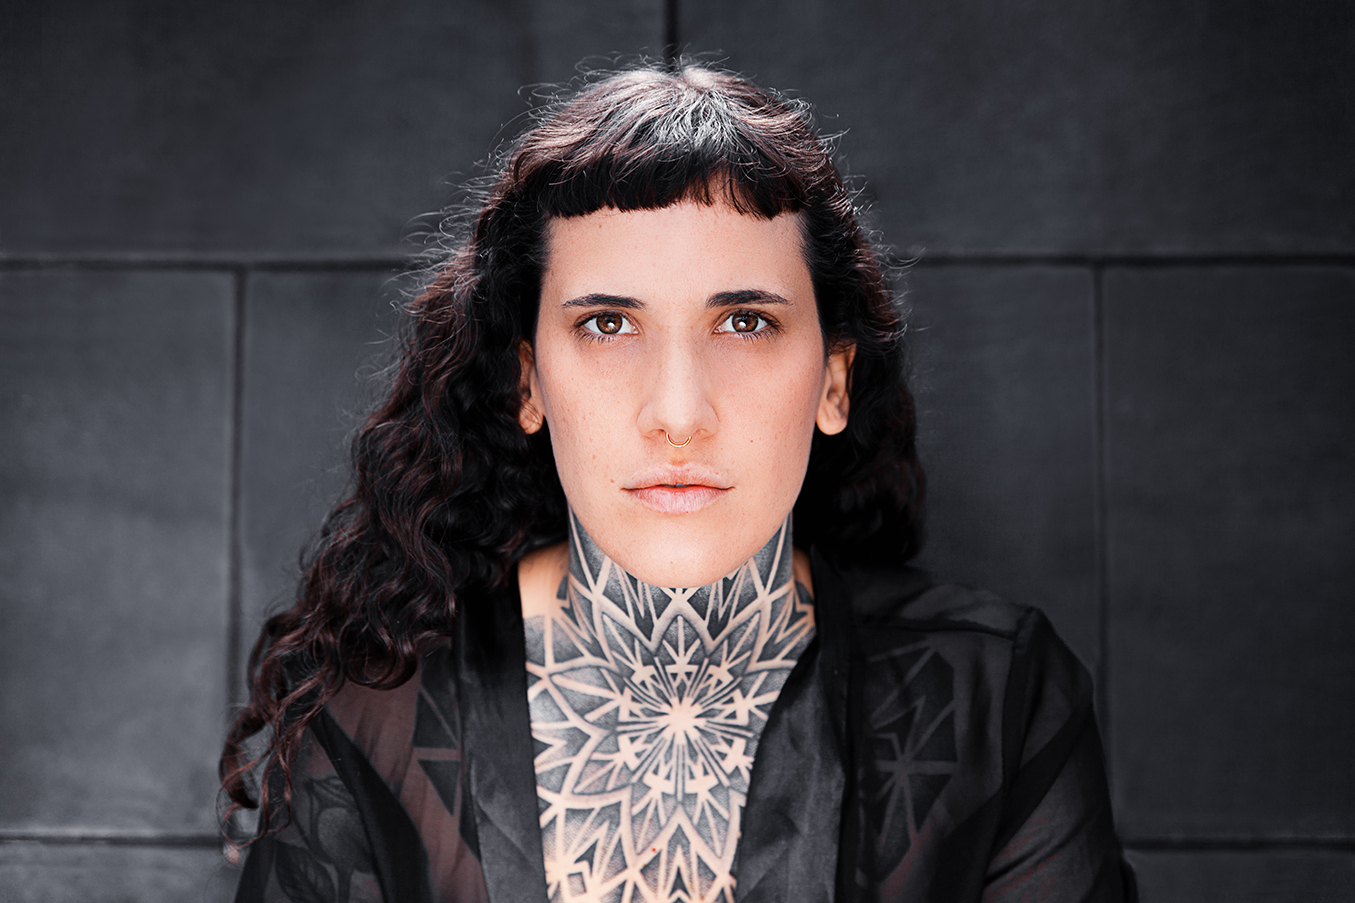 Tattoo artist Julim Distortion captured by Yvonne Hartmann